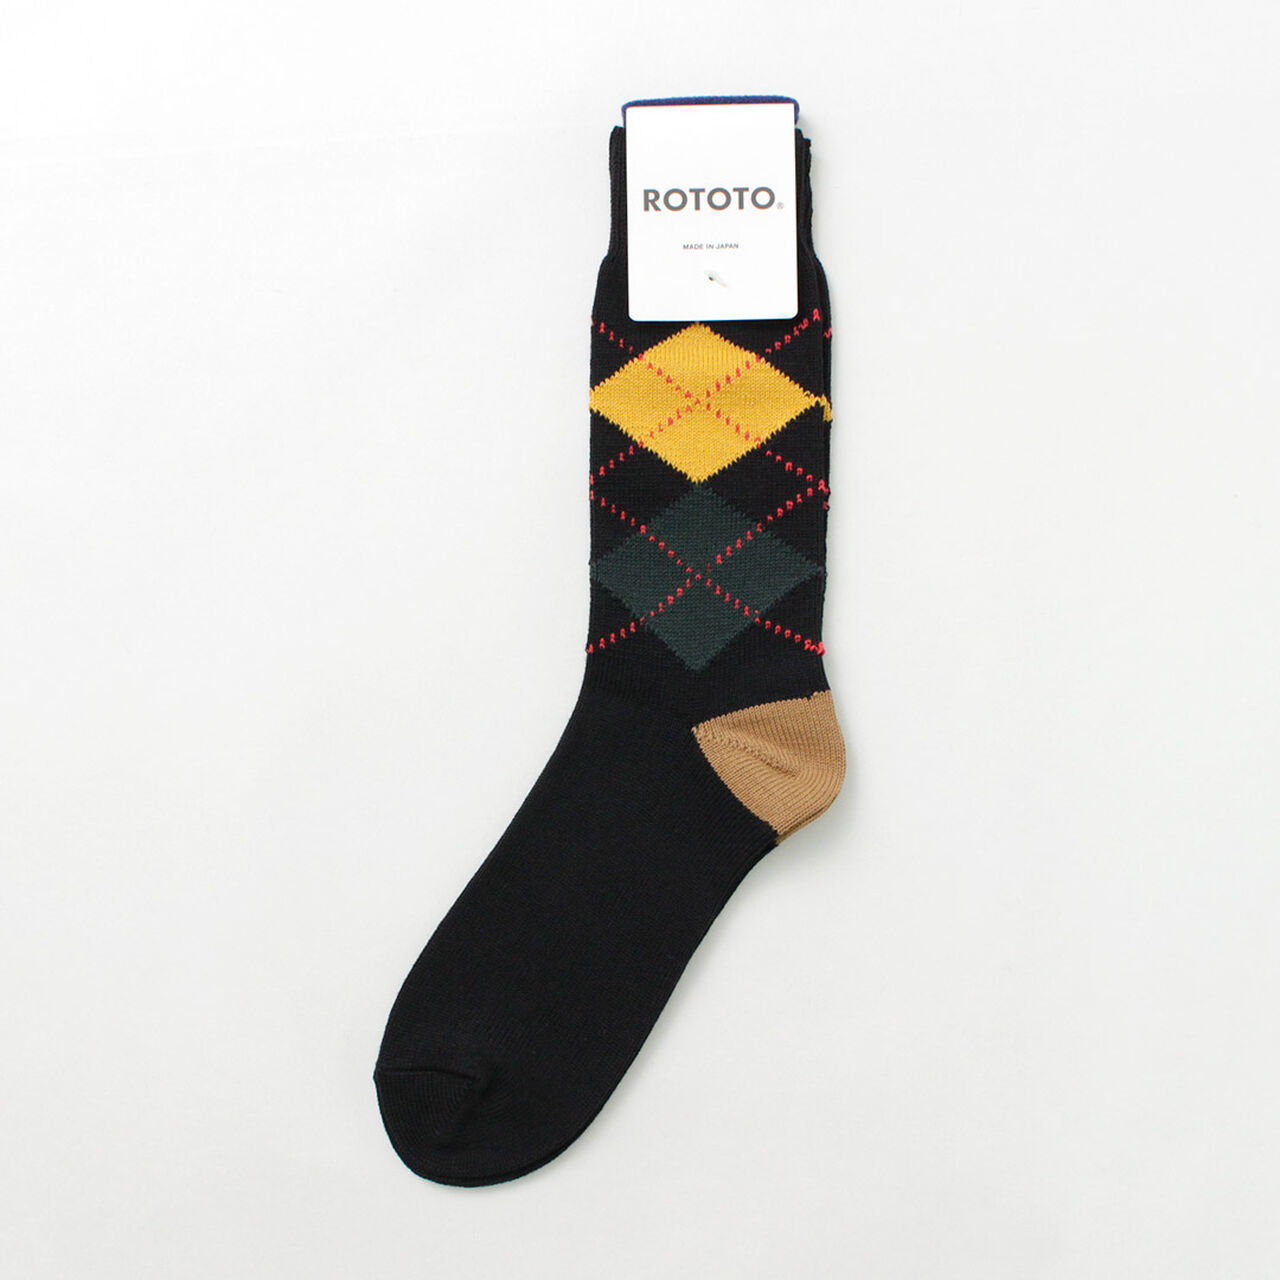 Argyle Crew Socks,Black_Cinnamon, large image number 0